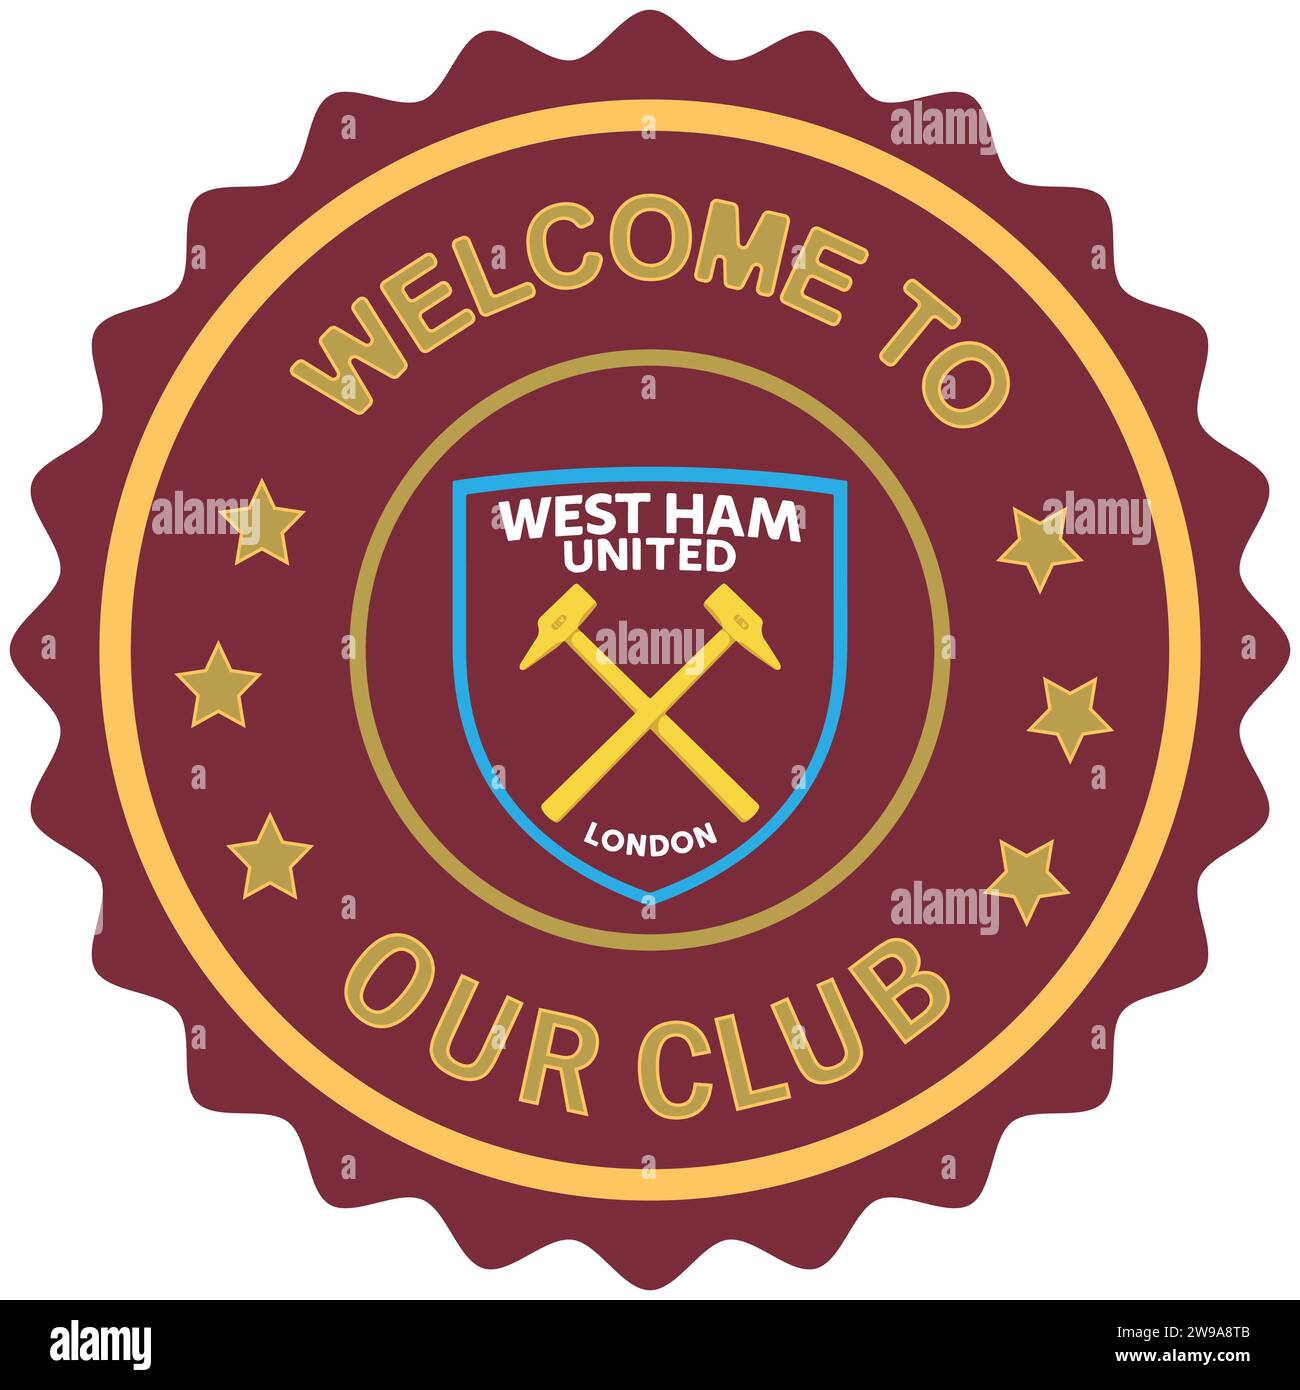 Benvenuto al West Ham United FC, marchio colorato e sigillo, squadra di calcio professionistica inglese Vector Illustration Abstract Editable image Illustrazione Vettoriale